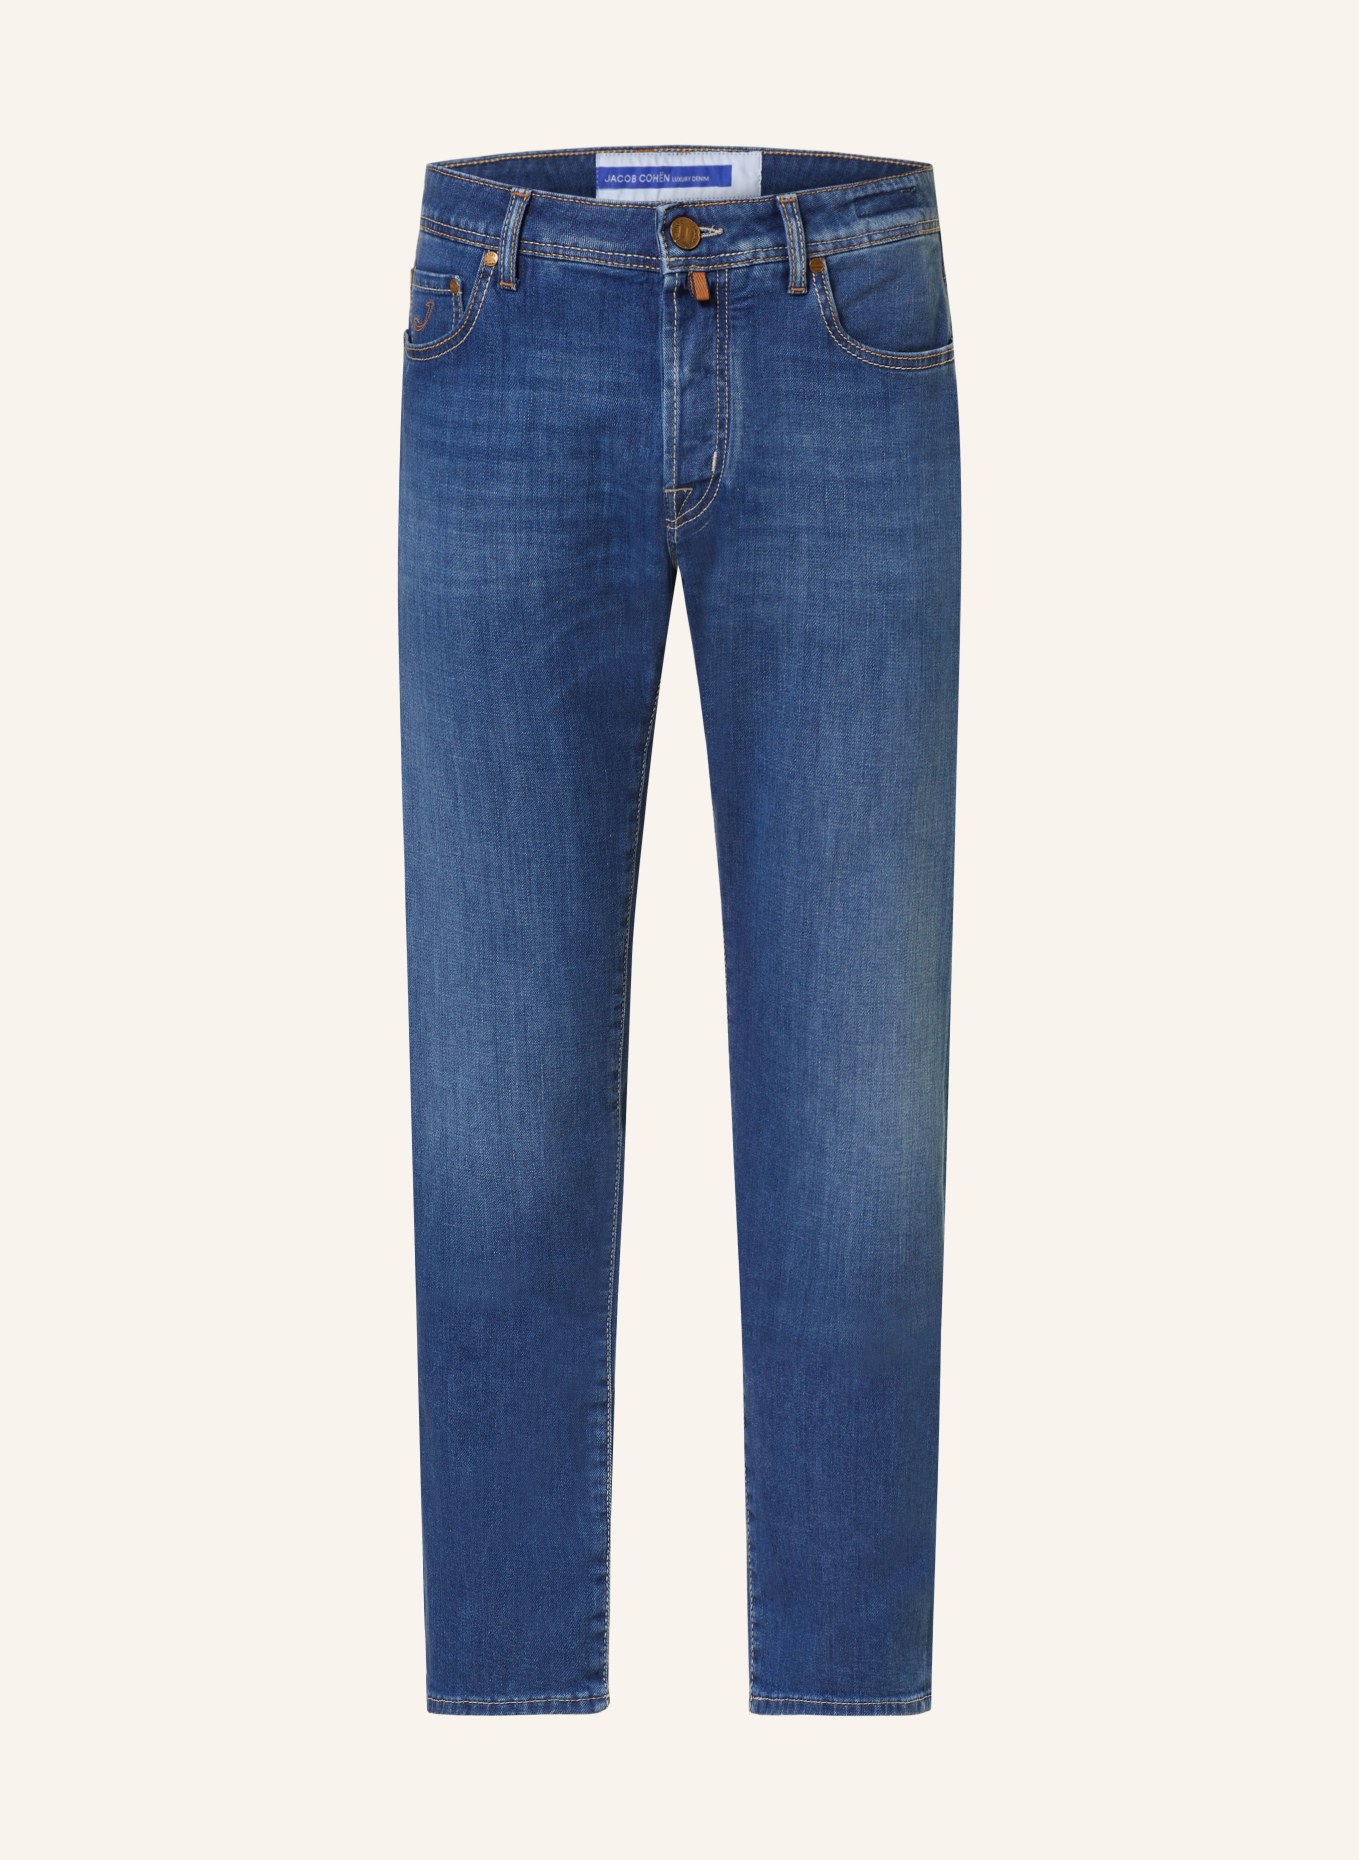 JACOB COHEN Jeans BARD slim fit, Color: 724D Light Blue (Image 1)